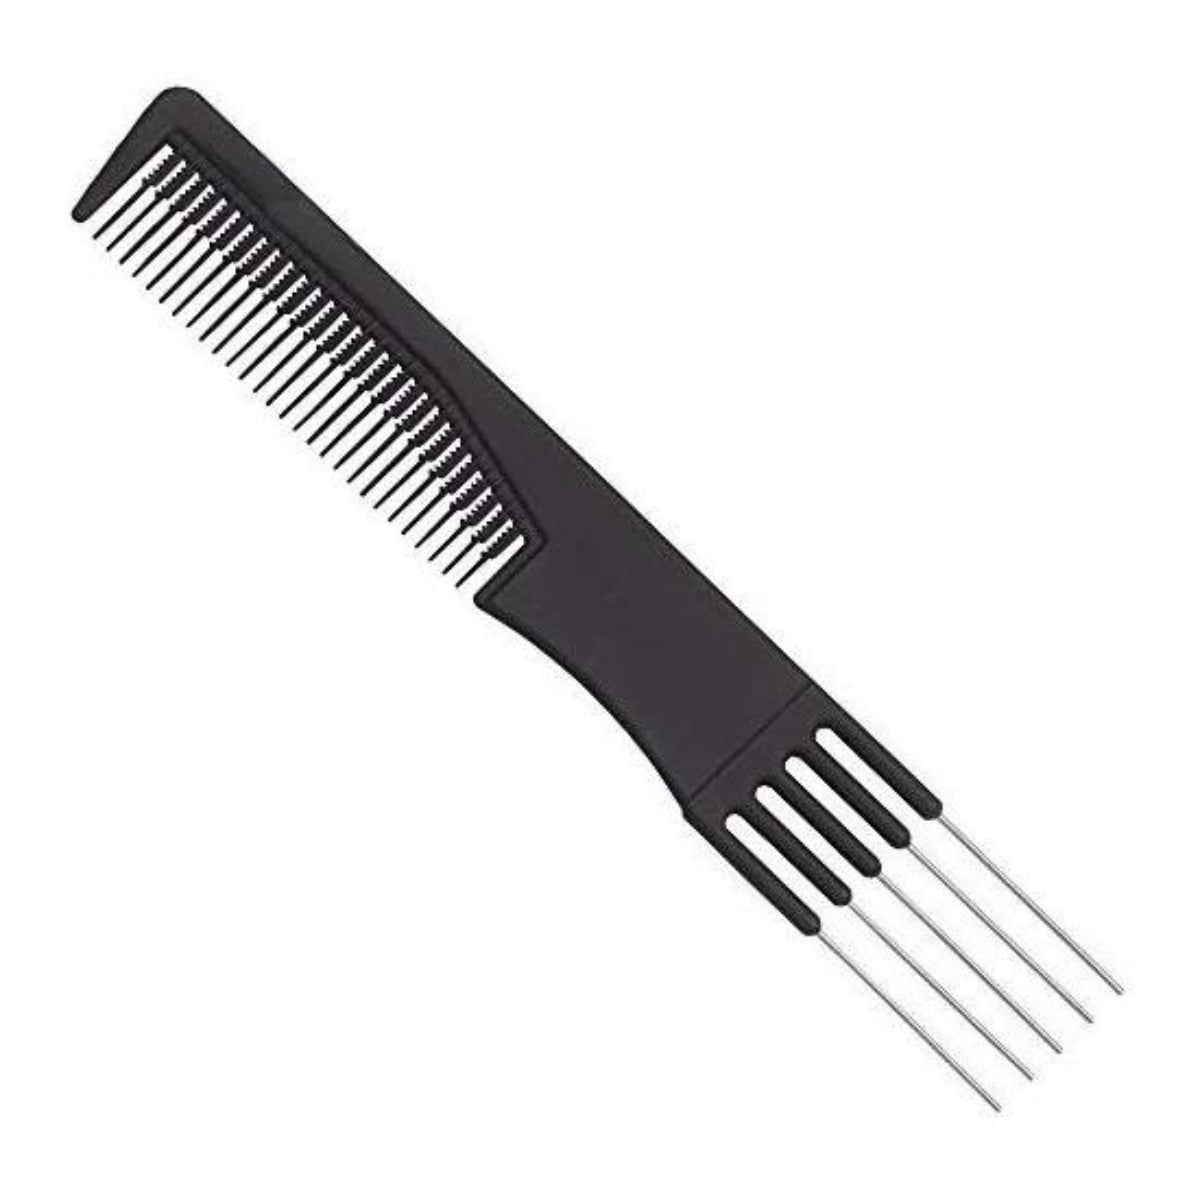 2pc Comb Set - Volume Comb & Fine Teeth Comb